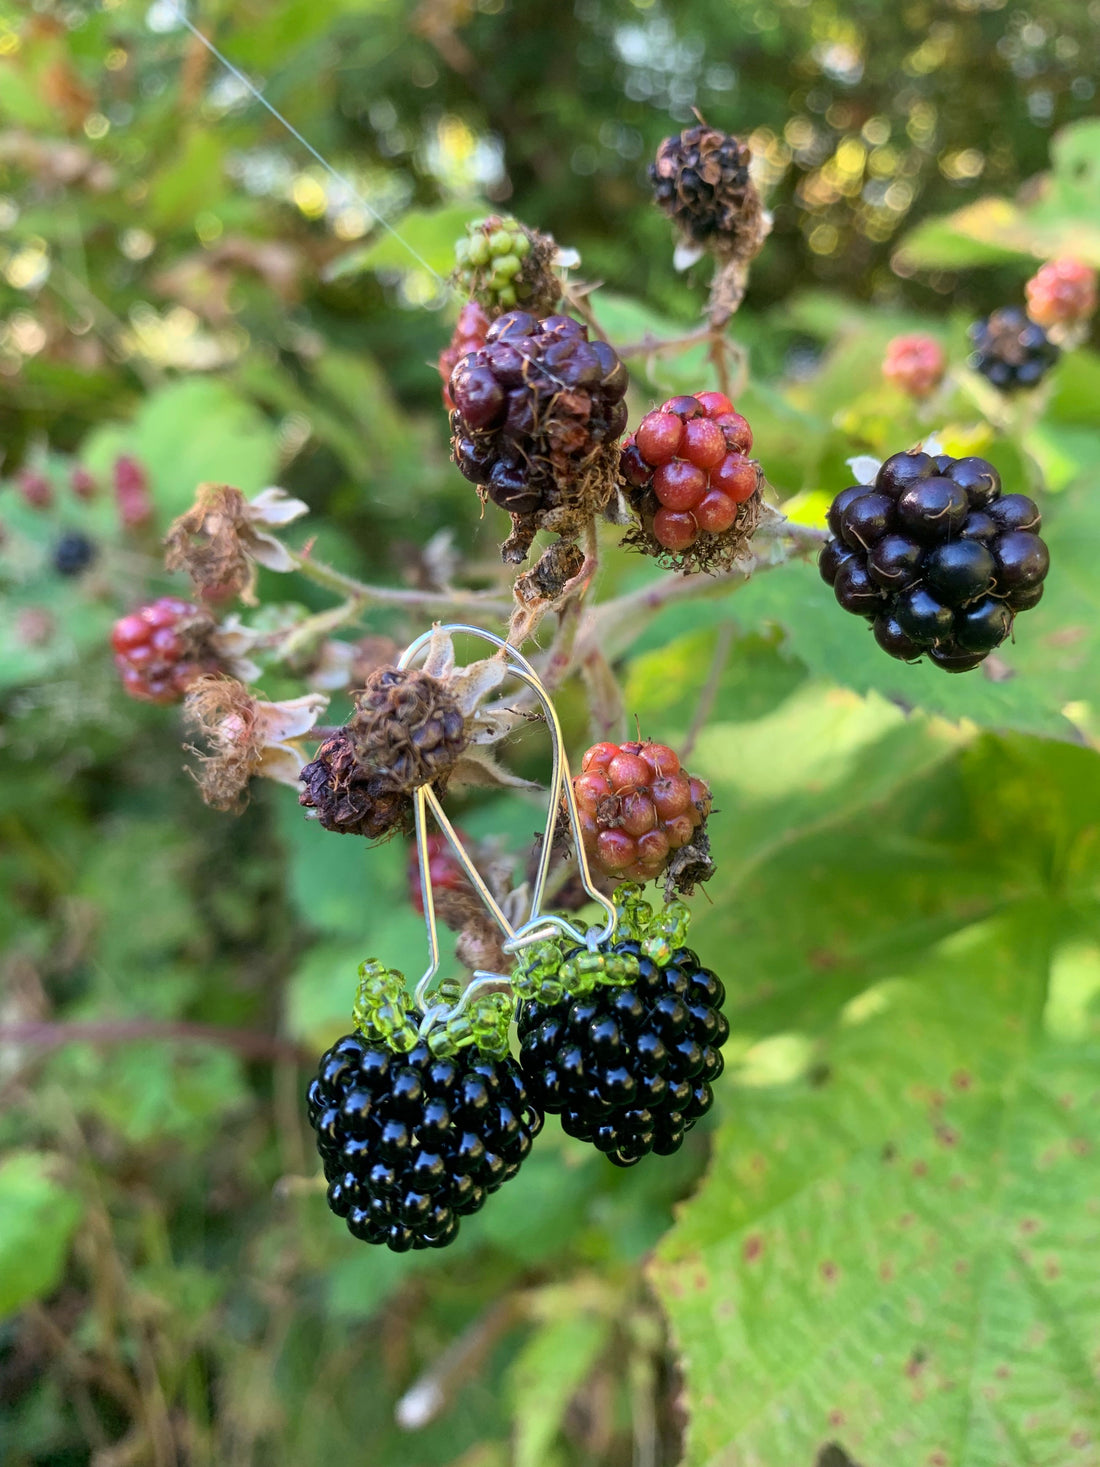 Juicy ripe blackberries